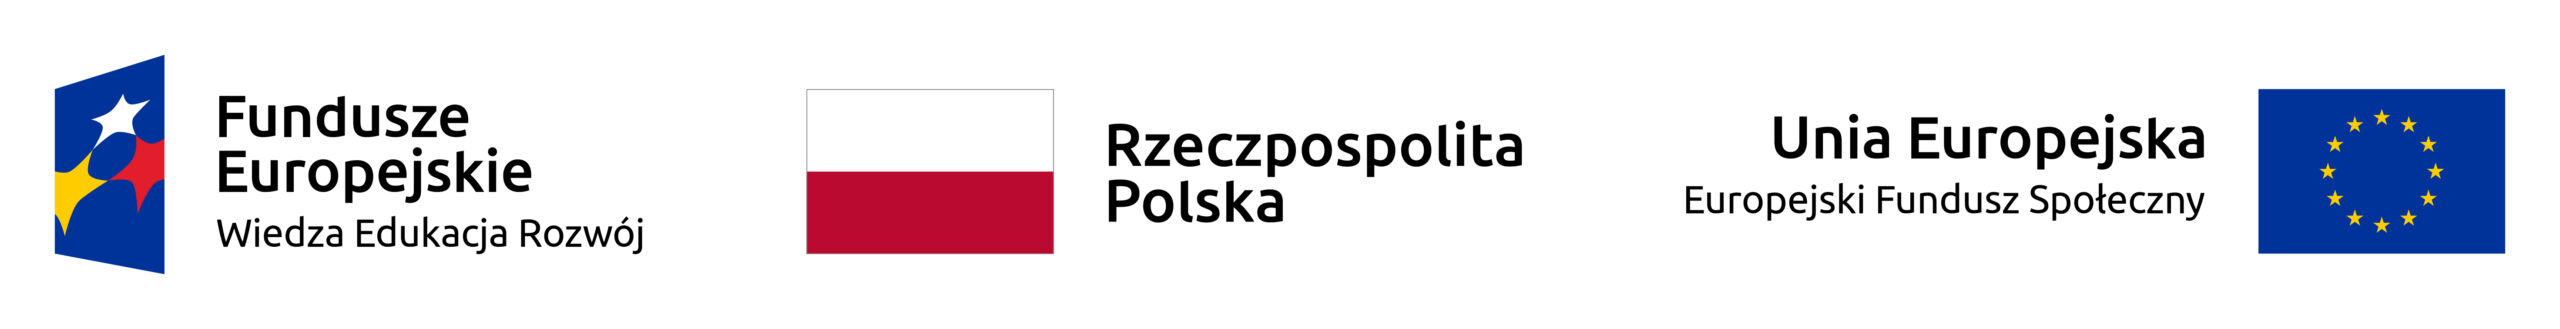 Logo: Fundusze Europejskie Wiedza Edukacja Rozwój. Flaga polski: Rzeczpospolita Polska. Logo: Unia Europejska Europejski Fundusz Społeczny.